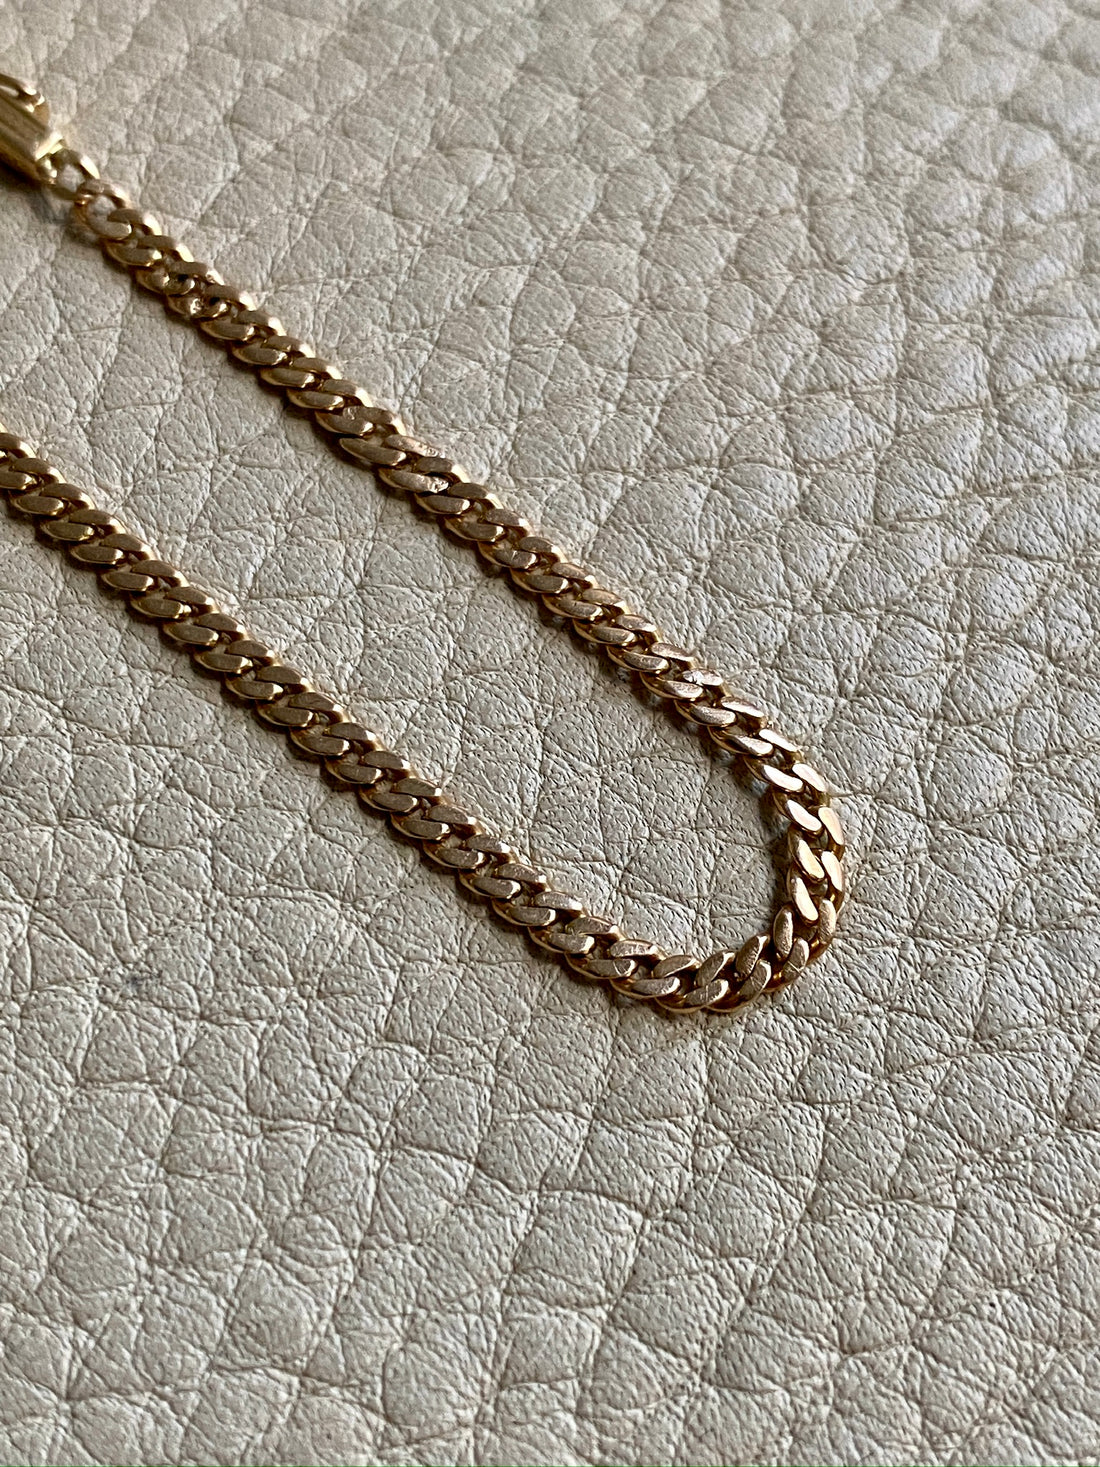 Vintage 18k gold curb bracelet - 7.5 inch length